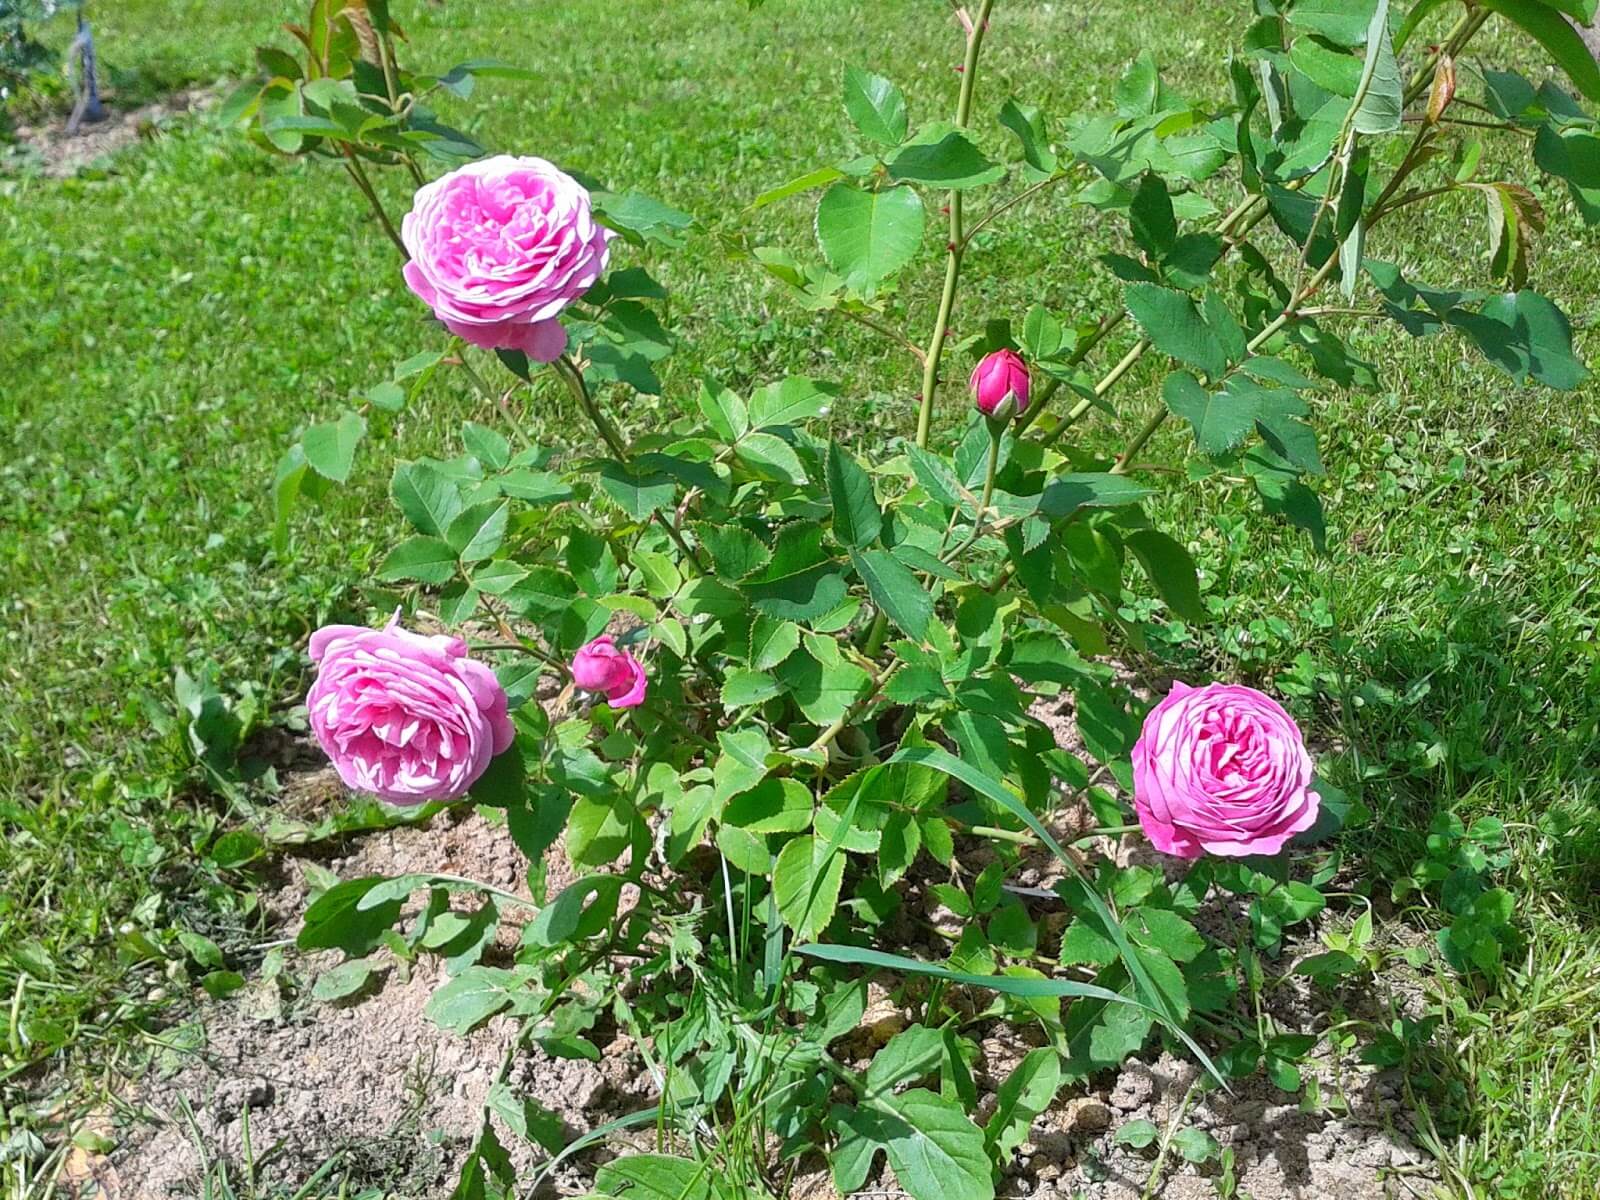 О розе луис одьер (louise odier): описание и характеристики сорта парковой розы